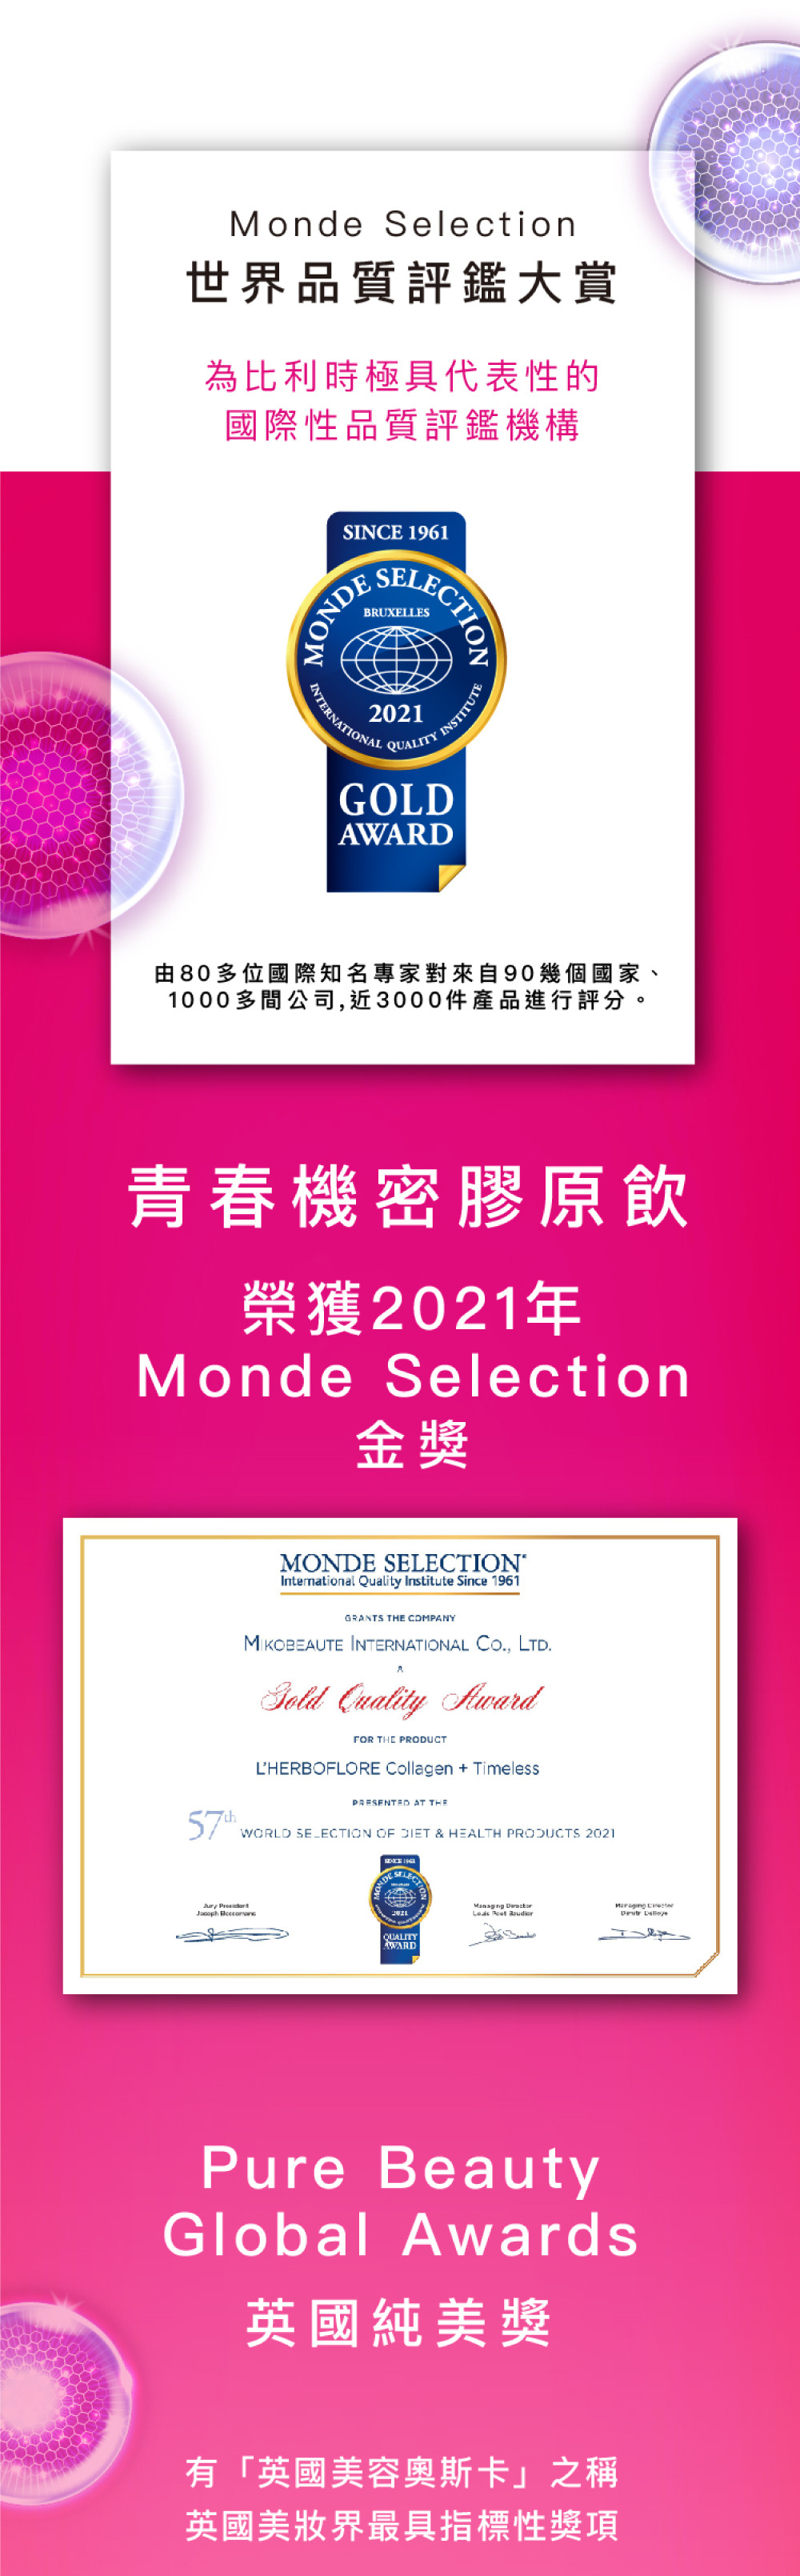 2021年Monde Selection金獎